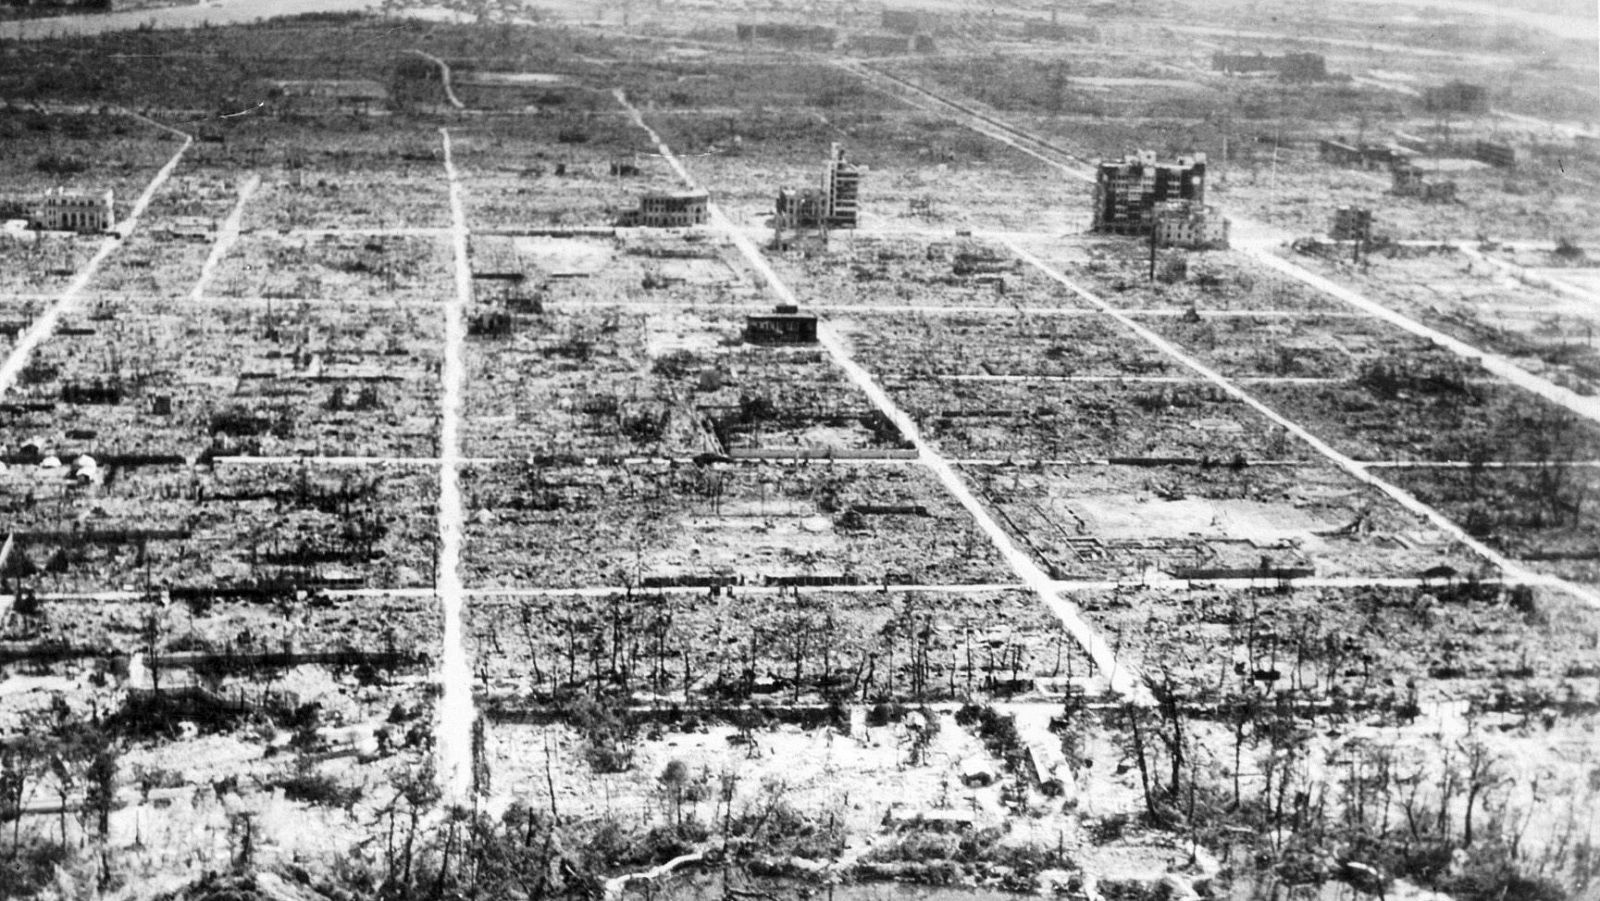 Vista aérea de Hiroshima, totalmente arrasada tras el lanzamiento de la bomba nuclear.